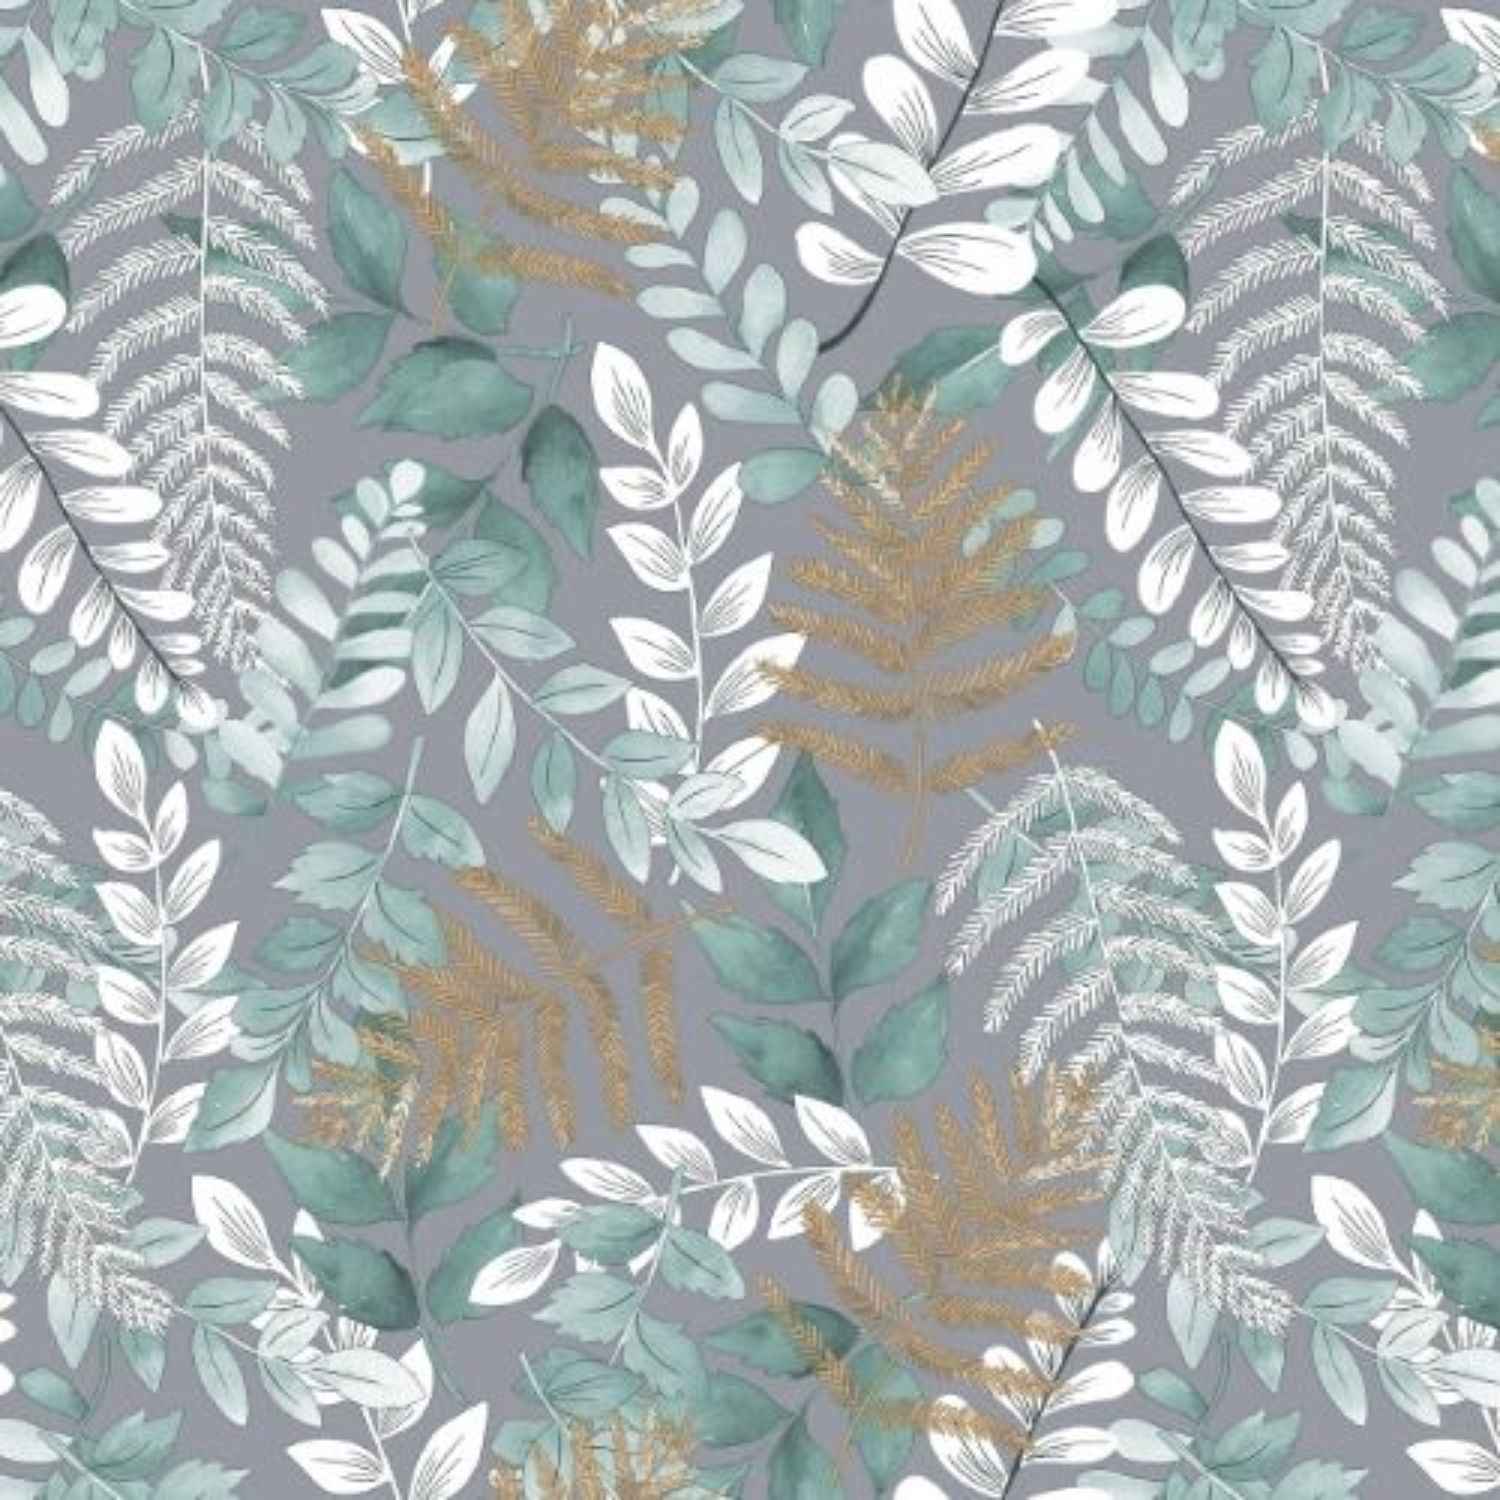 copripiumino-foglia-puro-cotone-quadrifoglio-fiorato-foglie-tropicali-felci-bianco-beige-verde-grigio-pattern